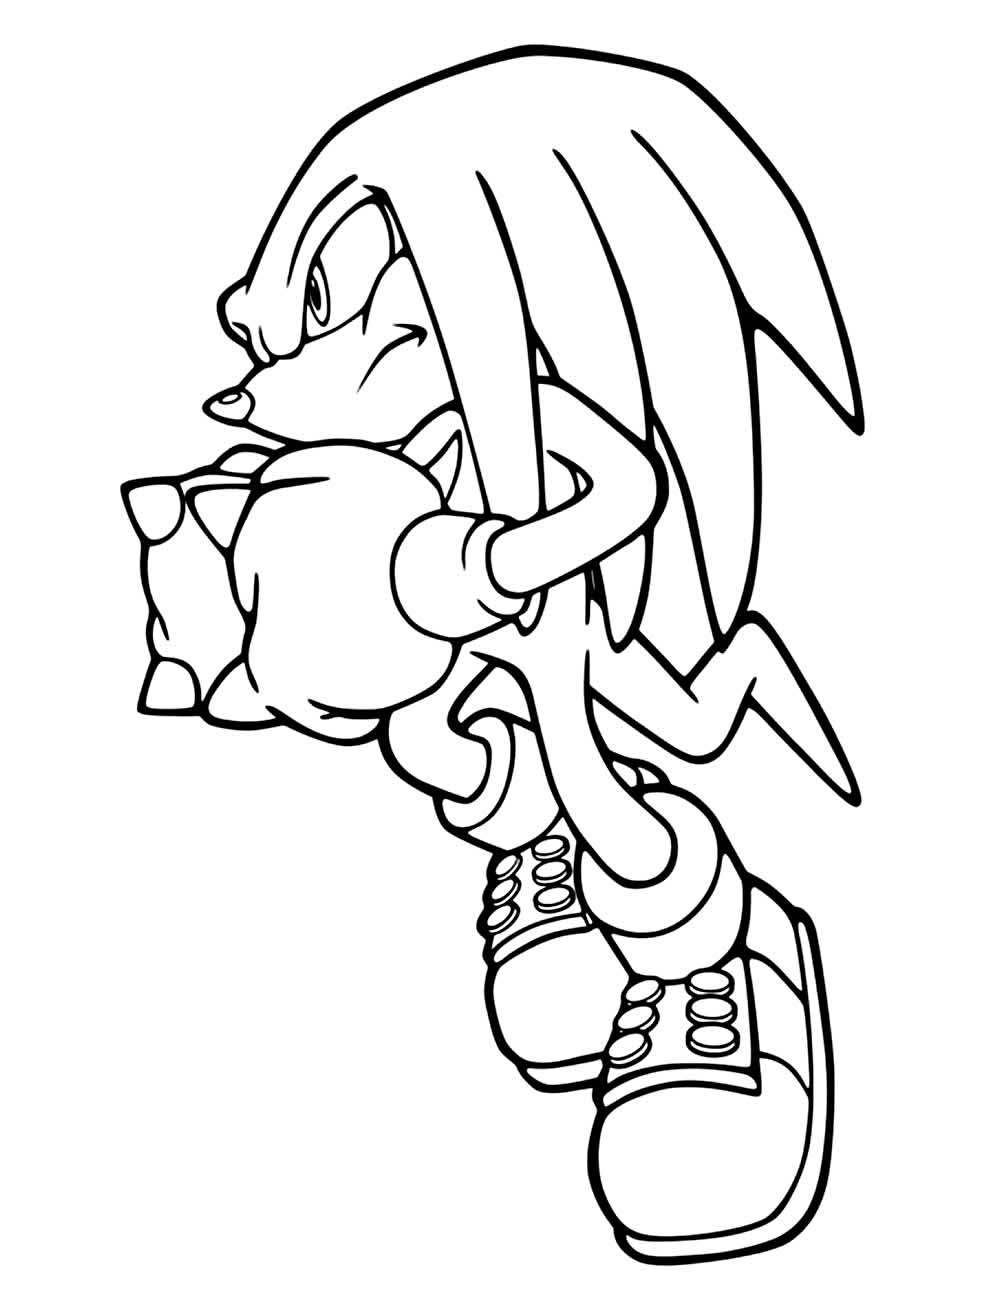 Desenho do Sonic para colorir